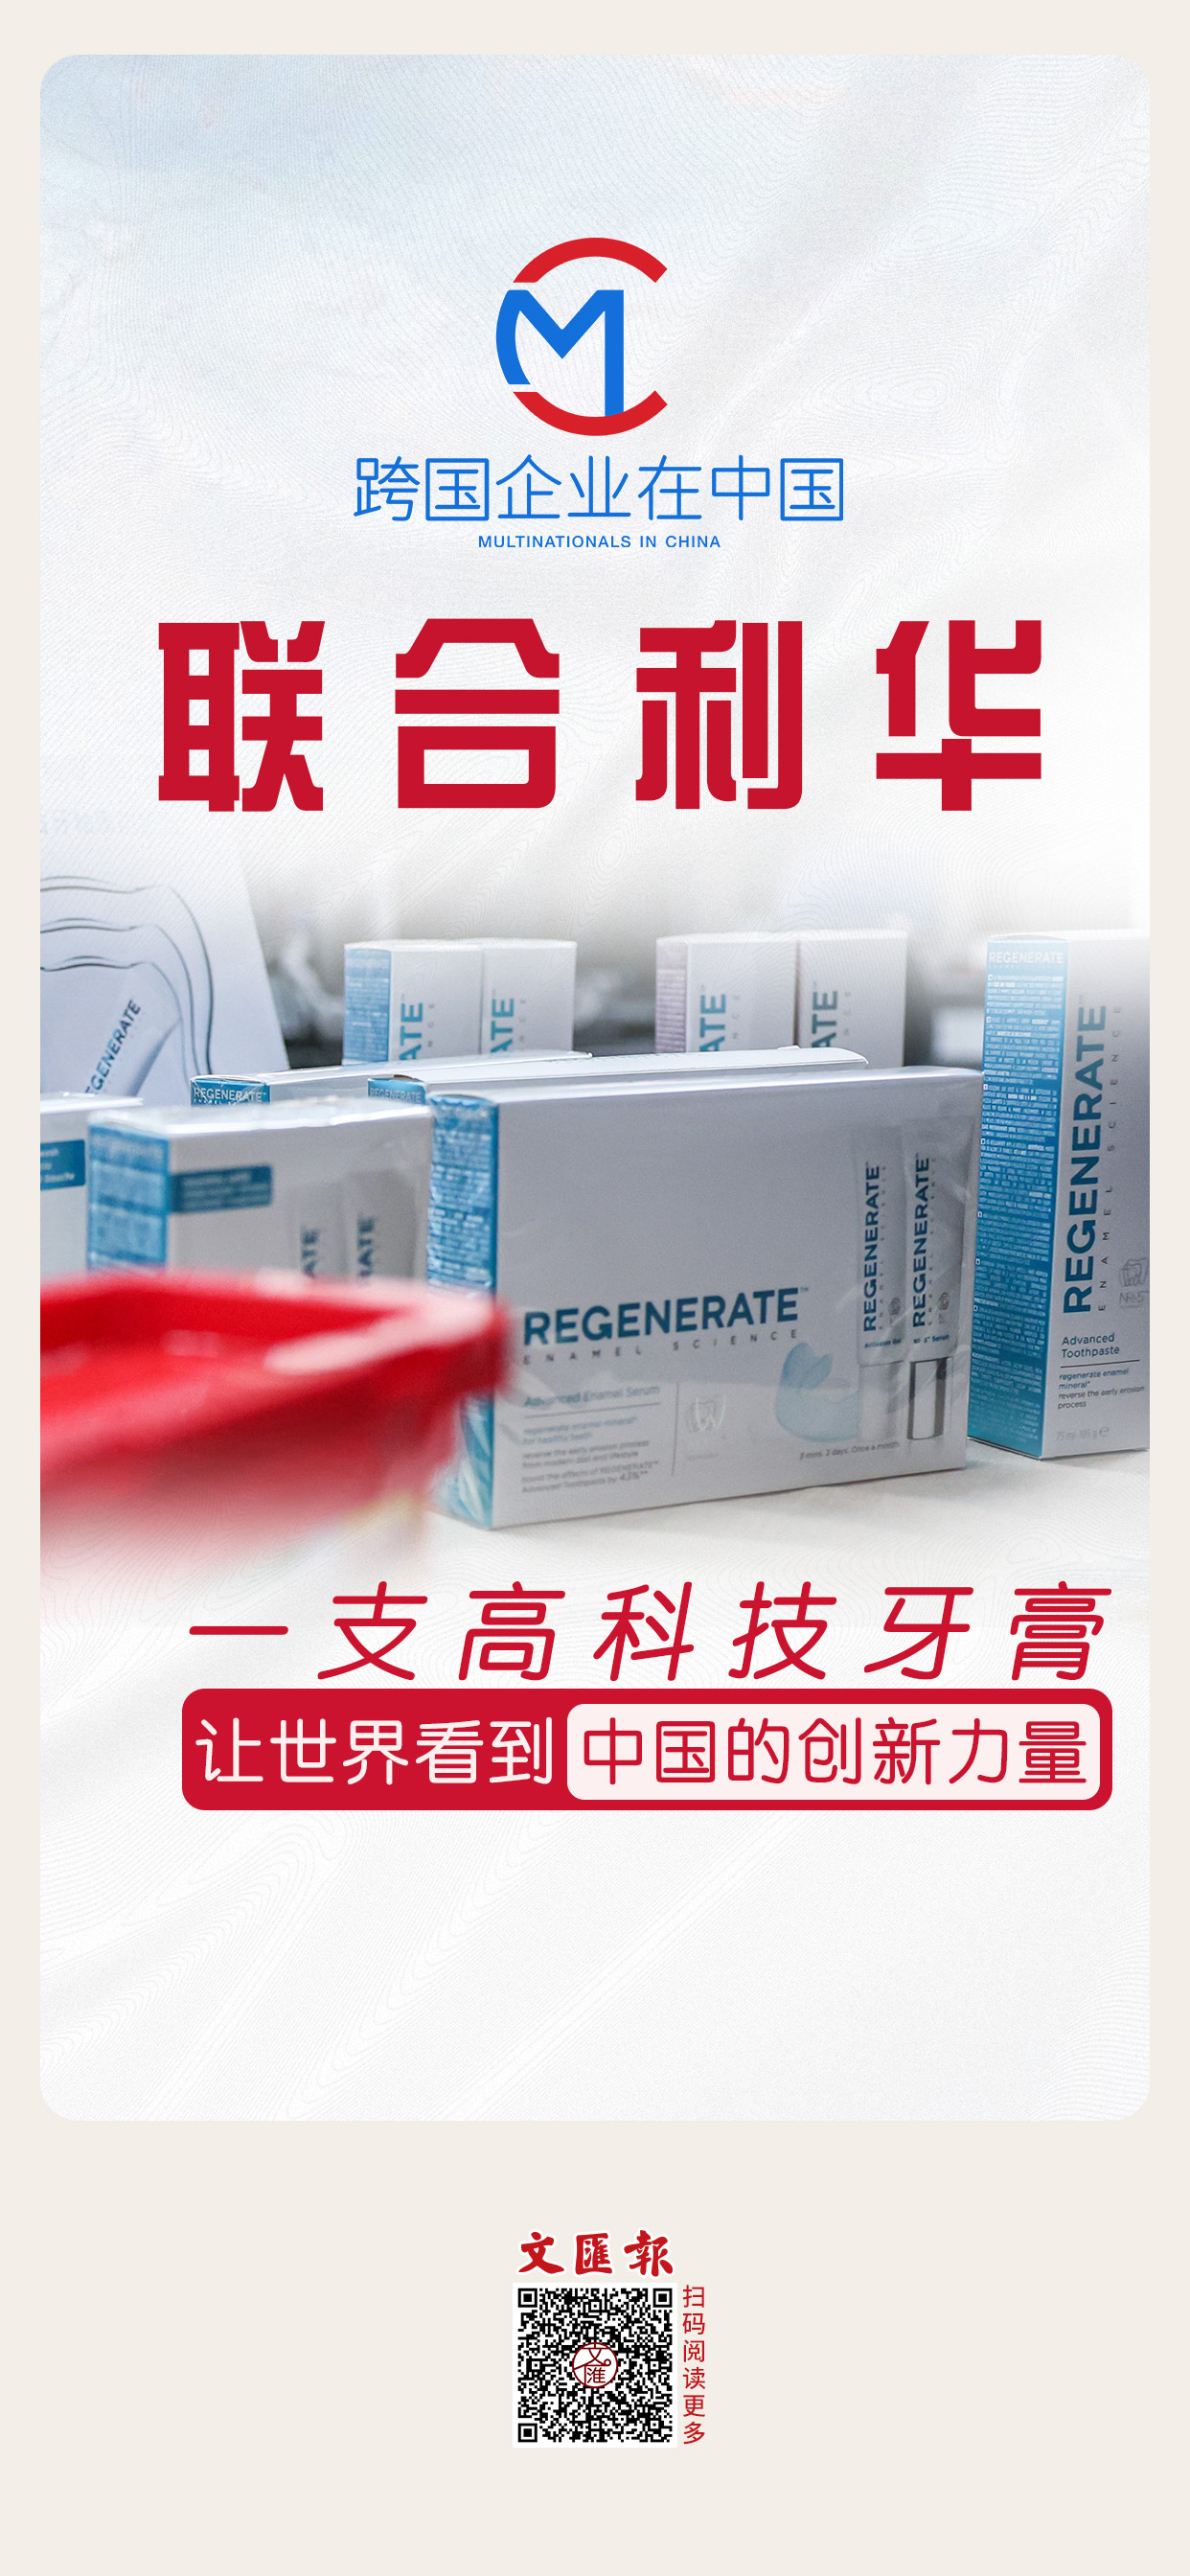 联合利华：一支高科技牙膏，让世界看到中国的创新力量.jpg